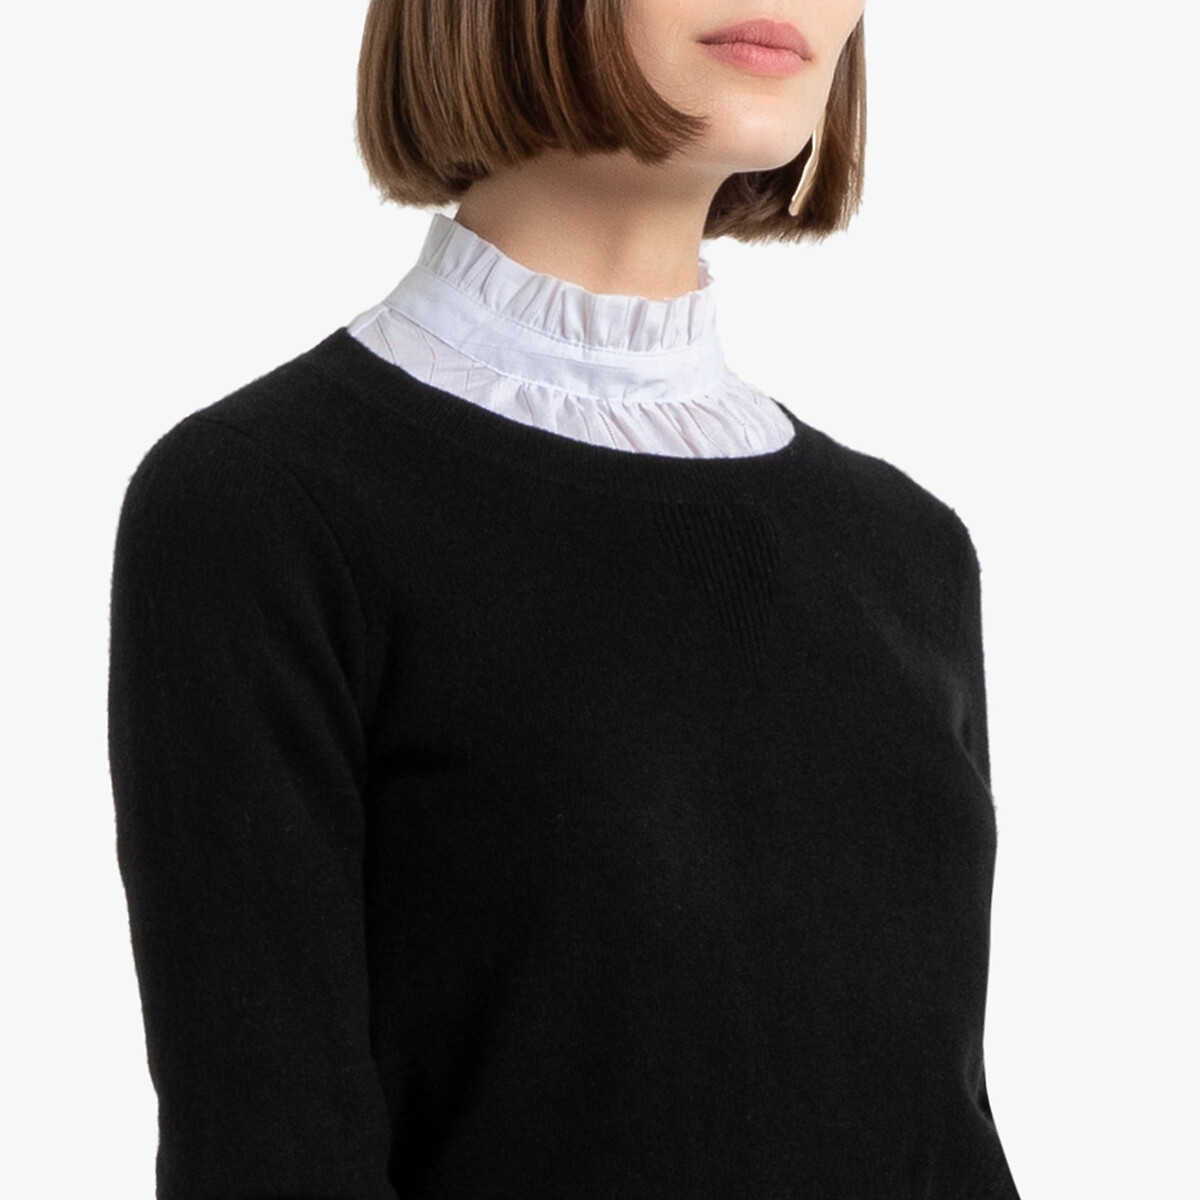 Пуловер La Redoute С круглым вырезом из кашемира XXL черный, размер XXL - фото 3